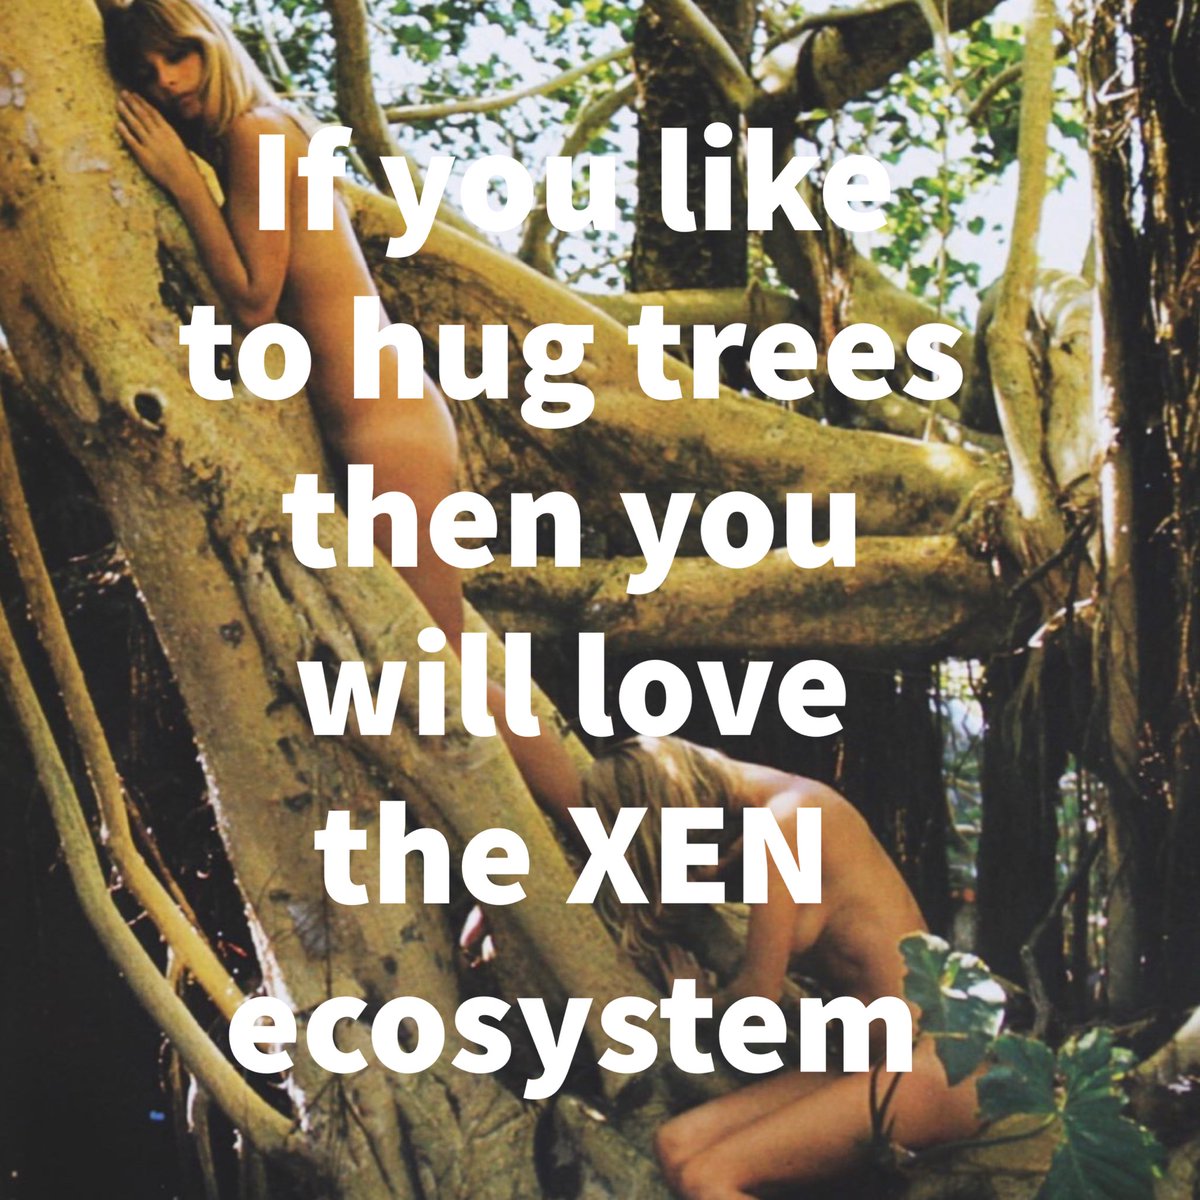 The $XEN ecosystem has something for everyone!! #cryptopunk #xenians #dbxen #xenlonmars #hugatree